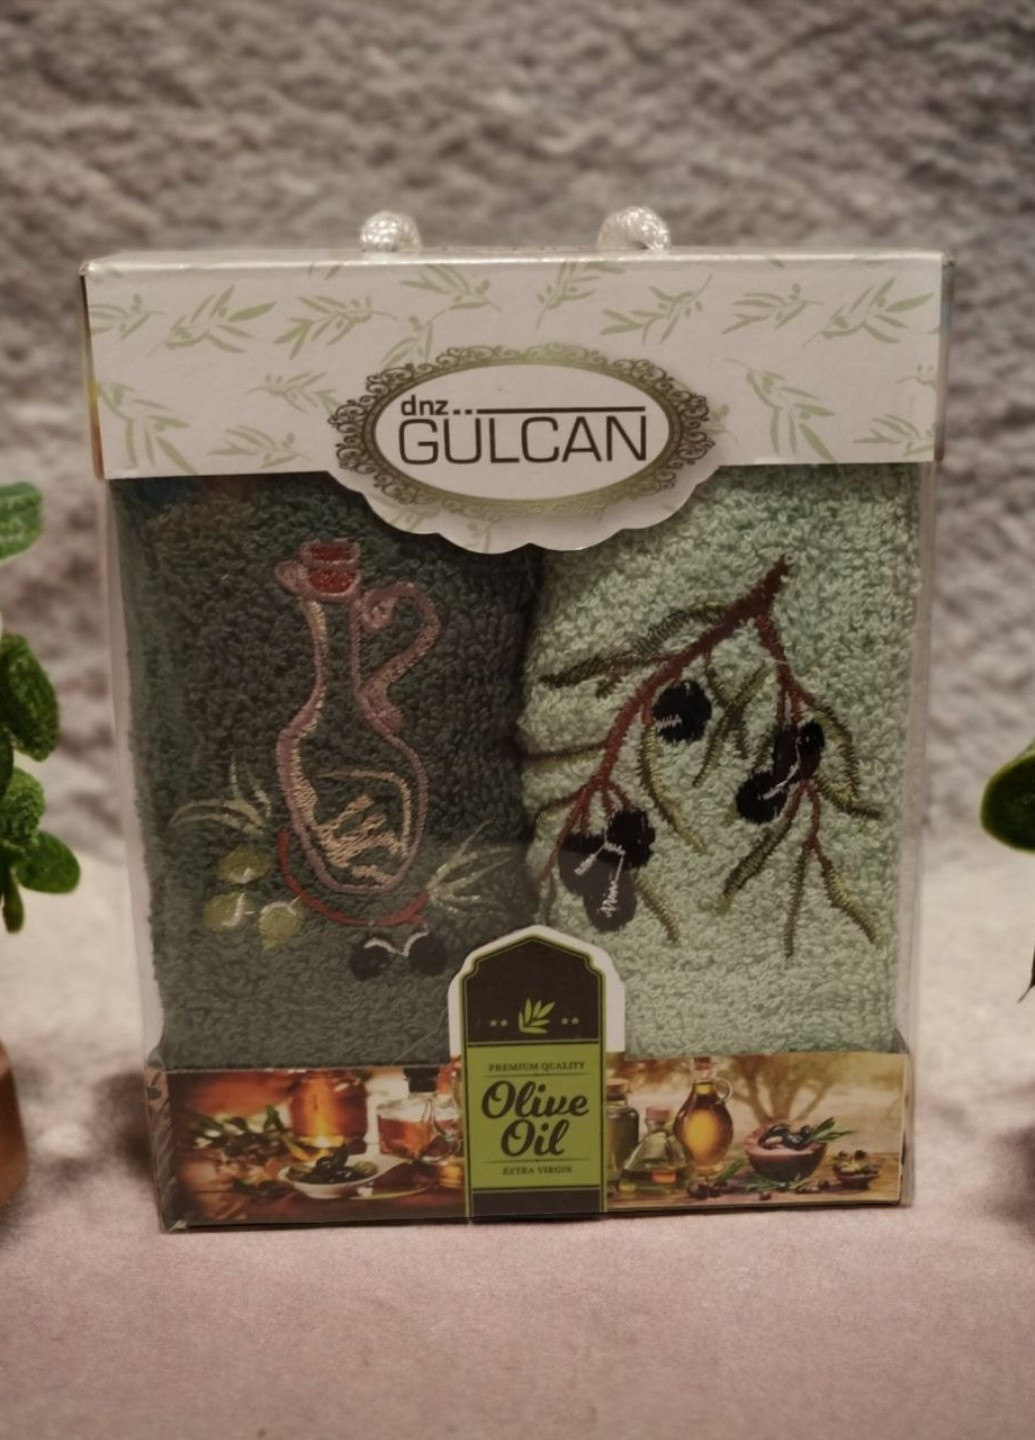 Gulcan подарочный набор кухонных полотенец olive oil абстрактный комбинированный производство - Турция